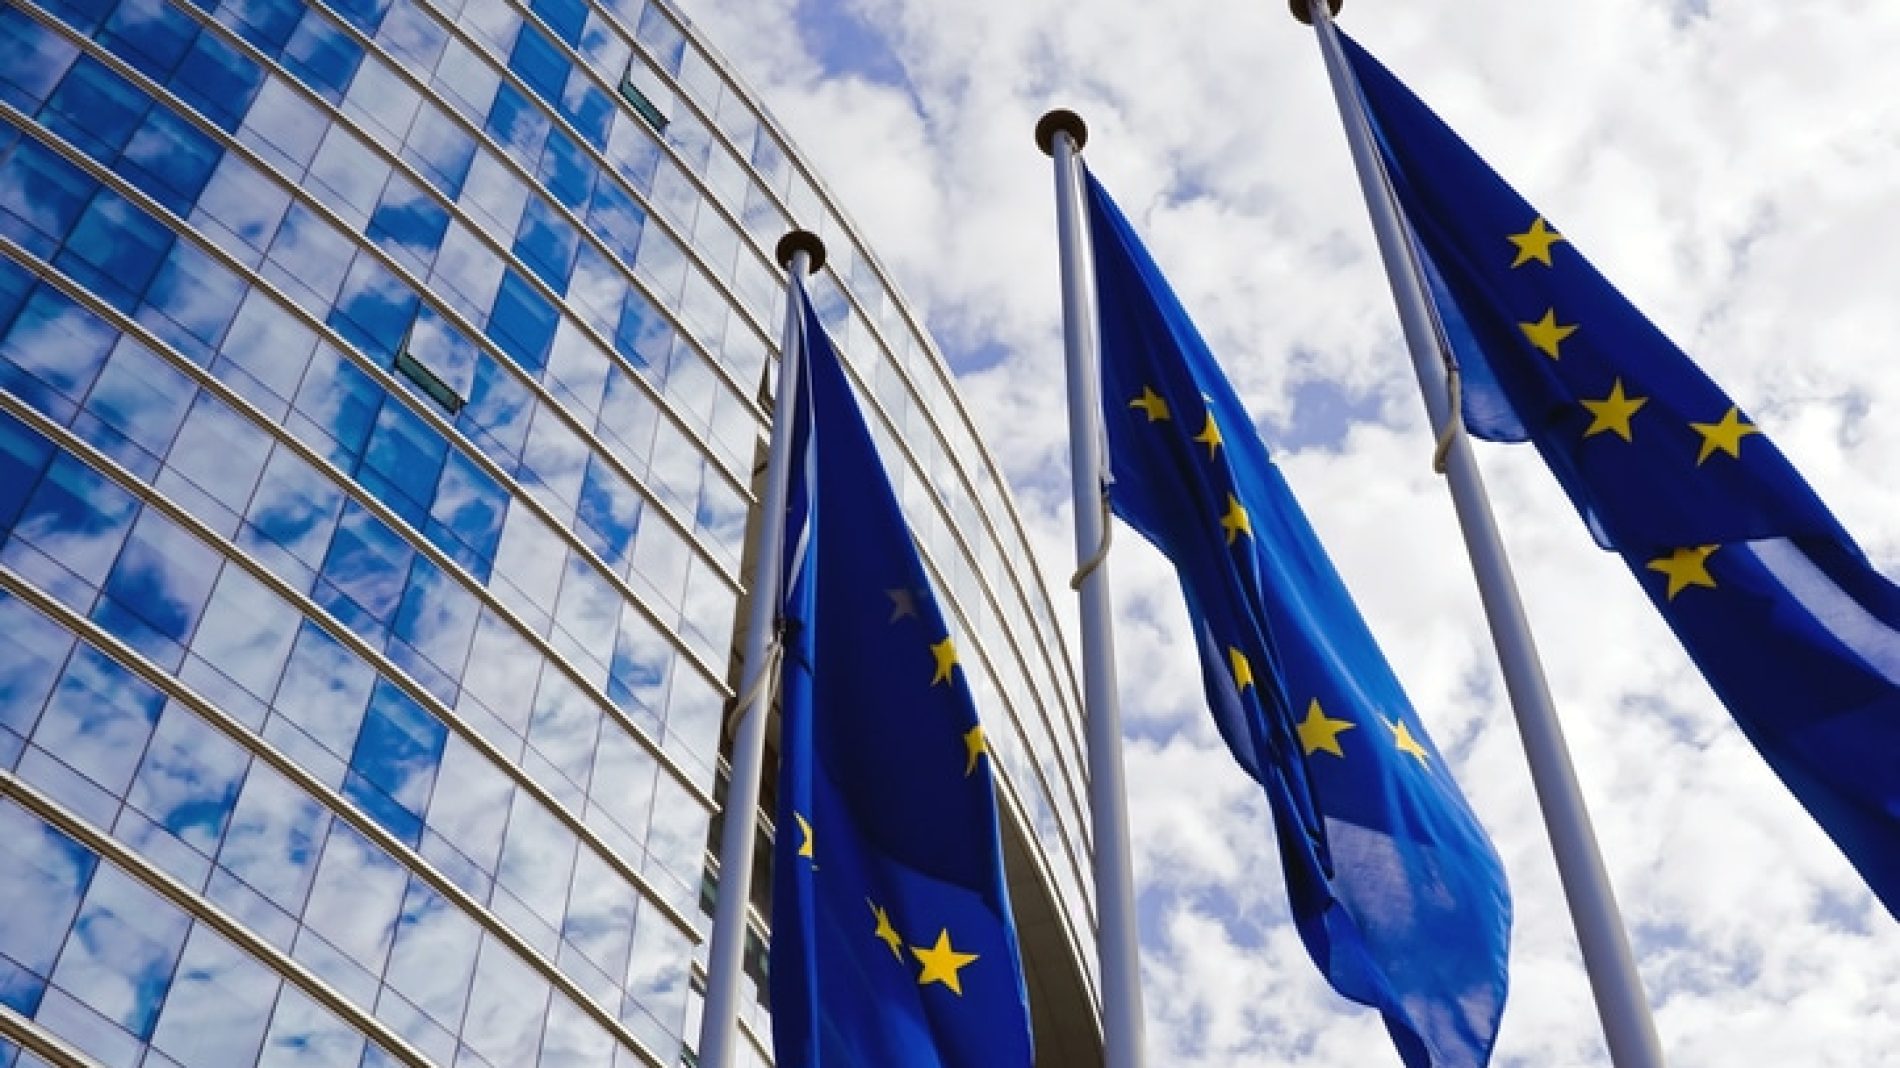 Three European Union flags outside the European Parliament building